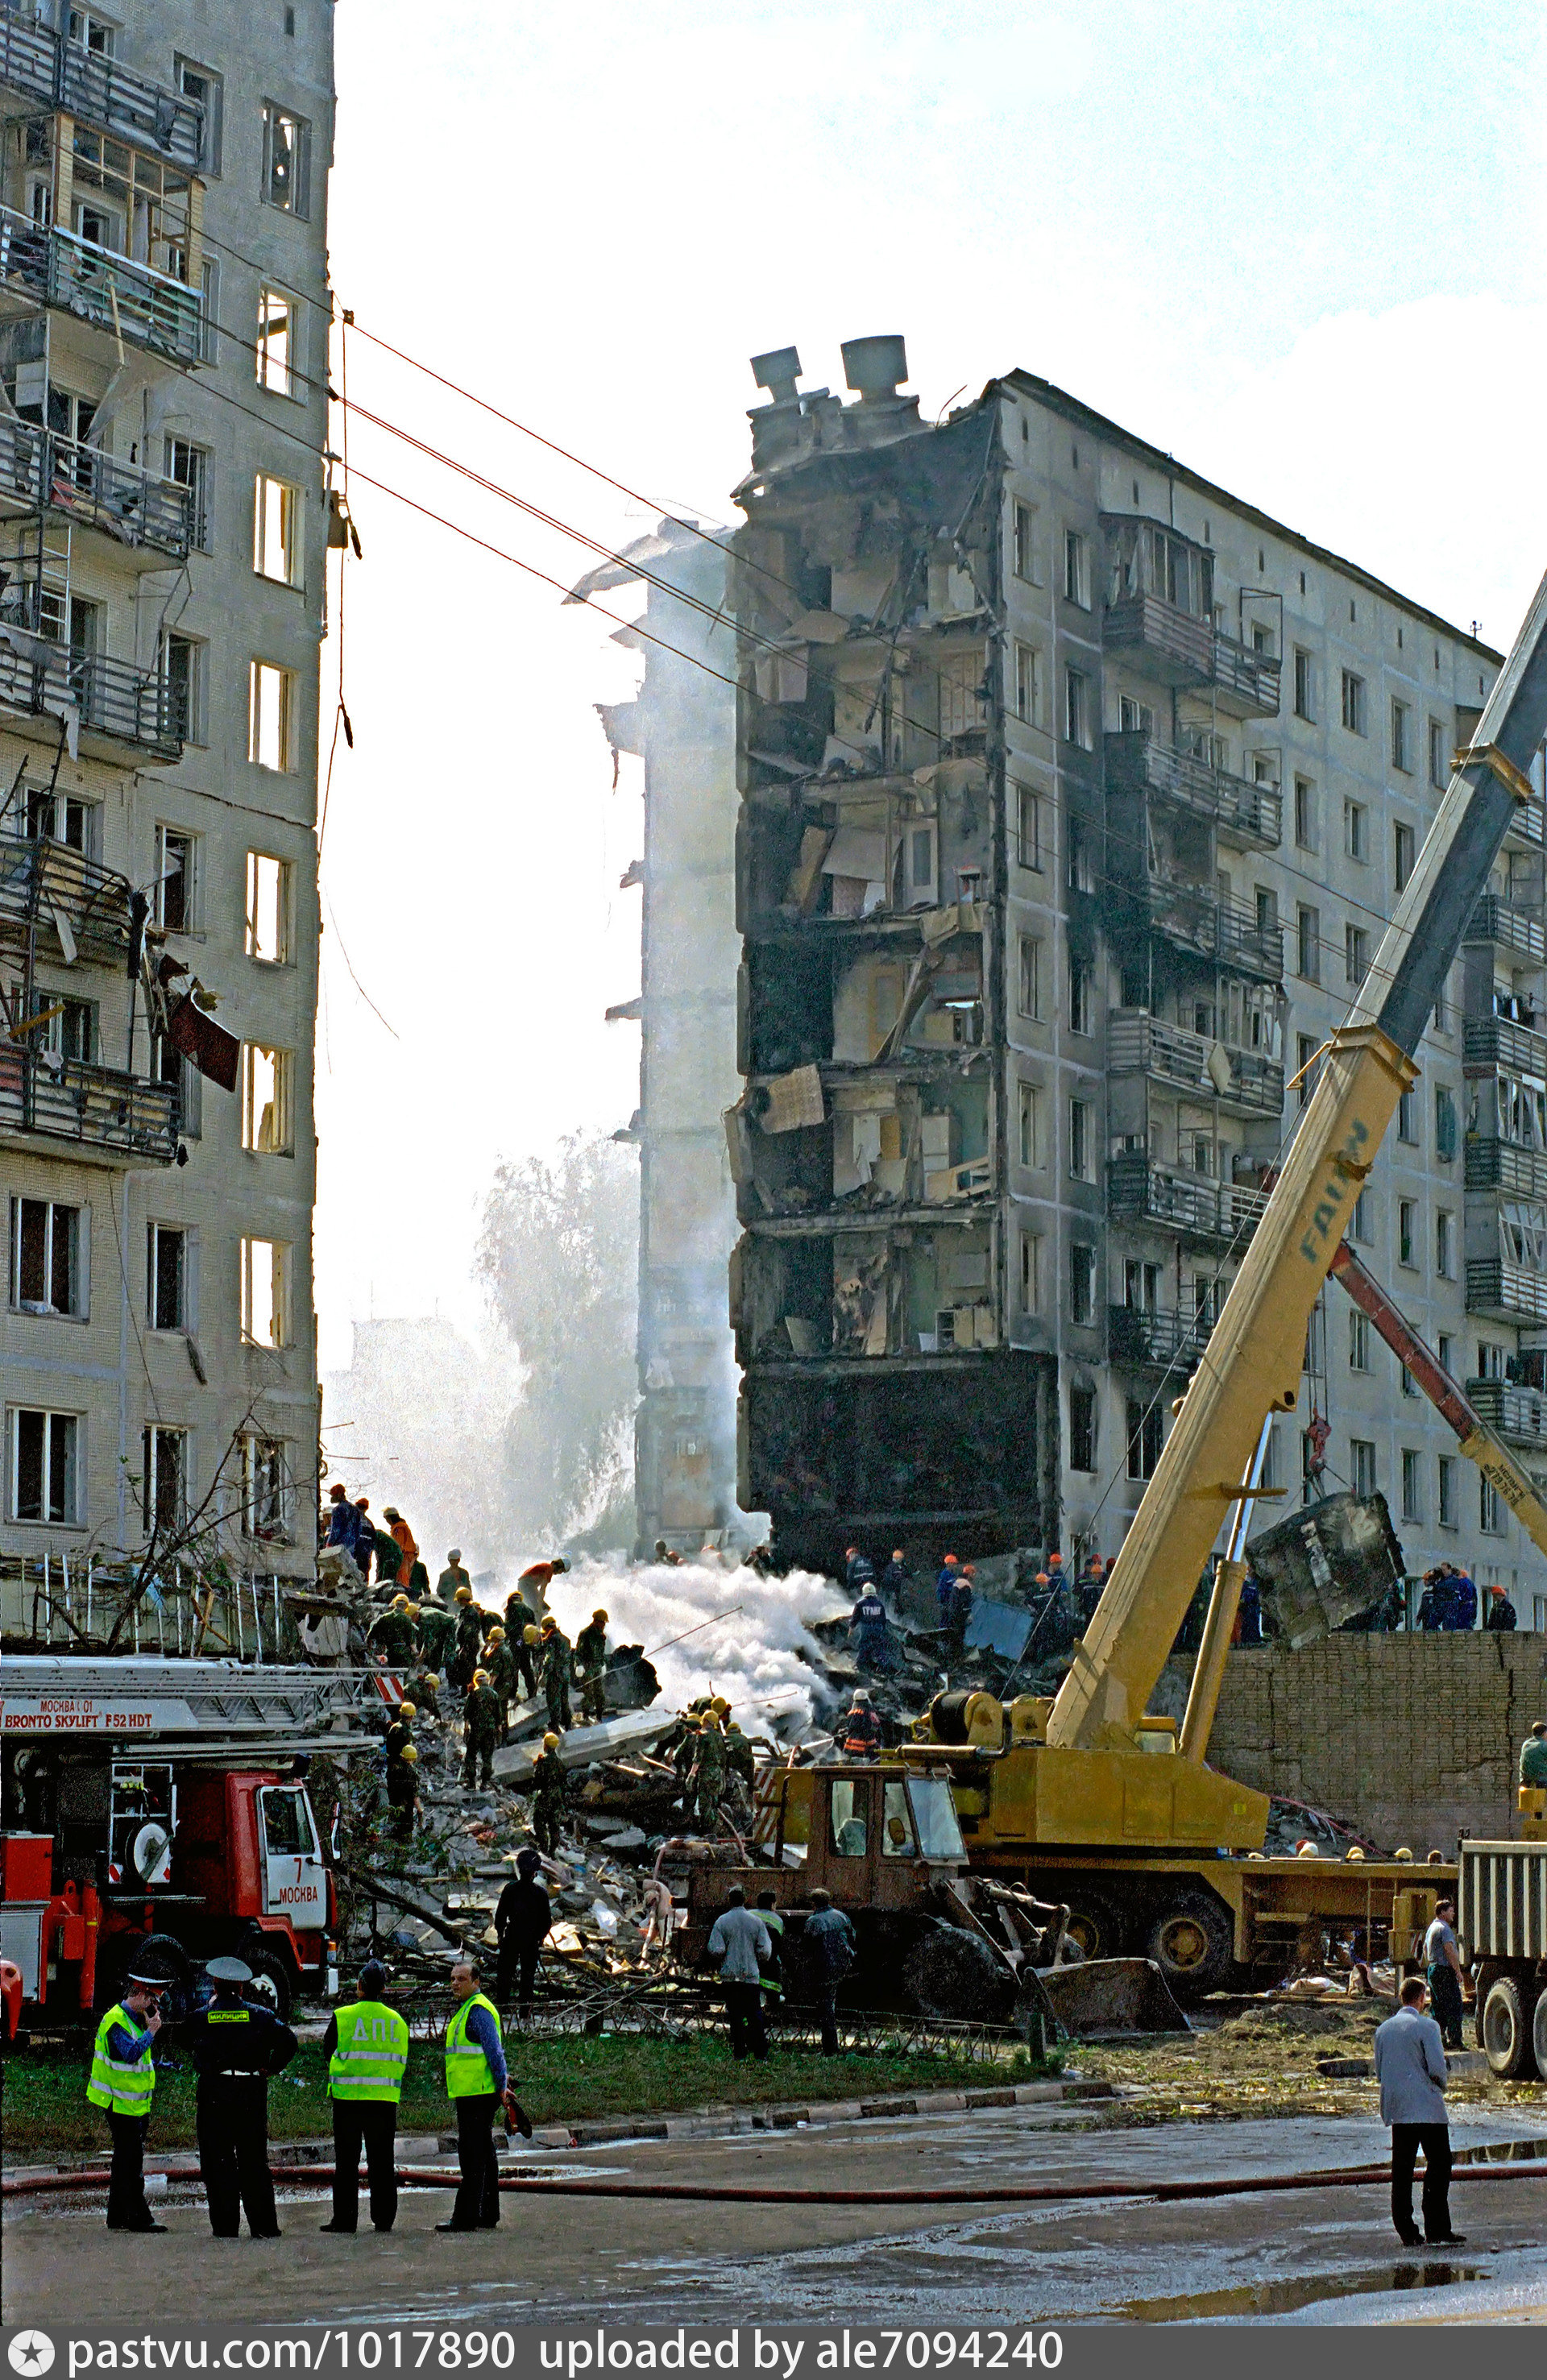 Взорвали дома в москве каком году. Москва улица Гурьянова 1999. Взрыв дома на улице Гурьянова 1999. Теракт на улице Гурьянова 1999 в Москве.